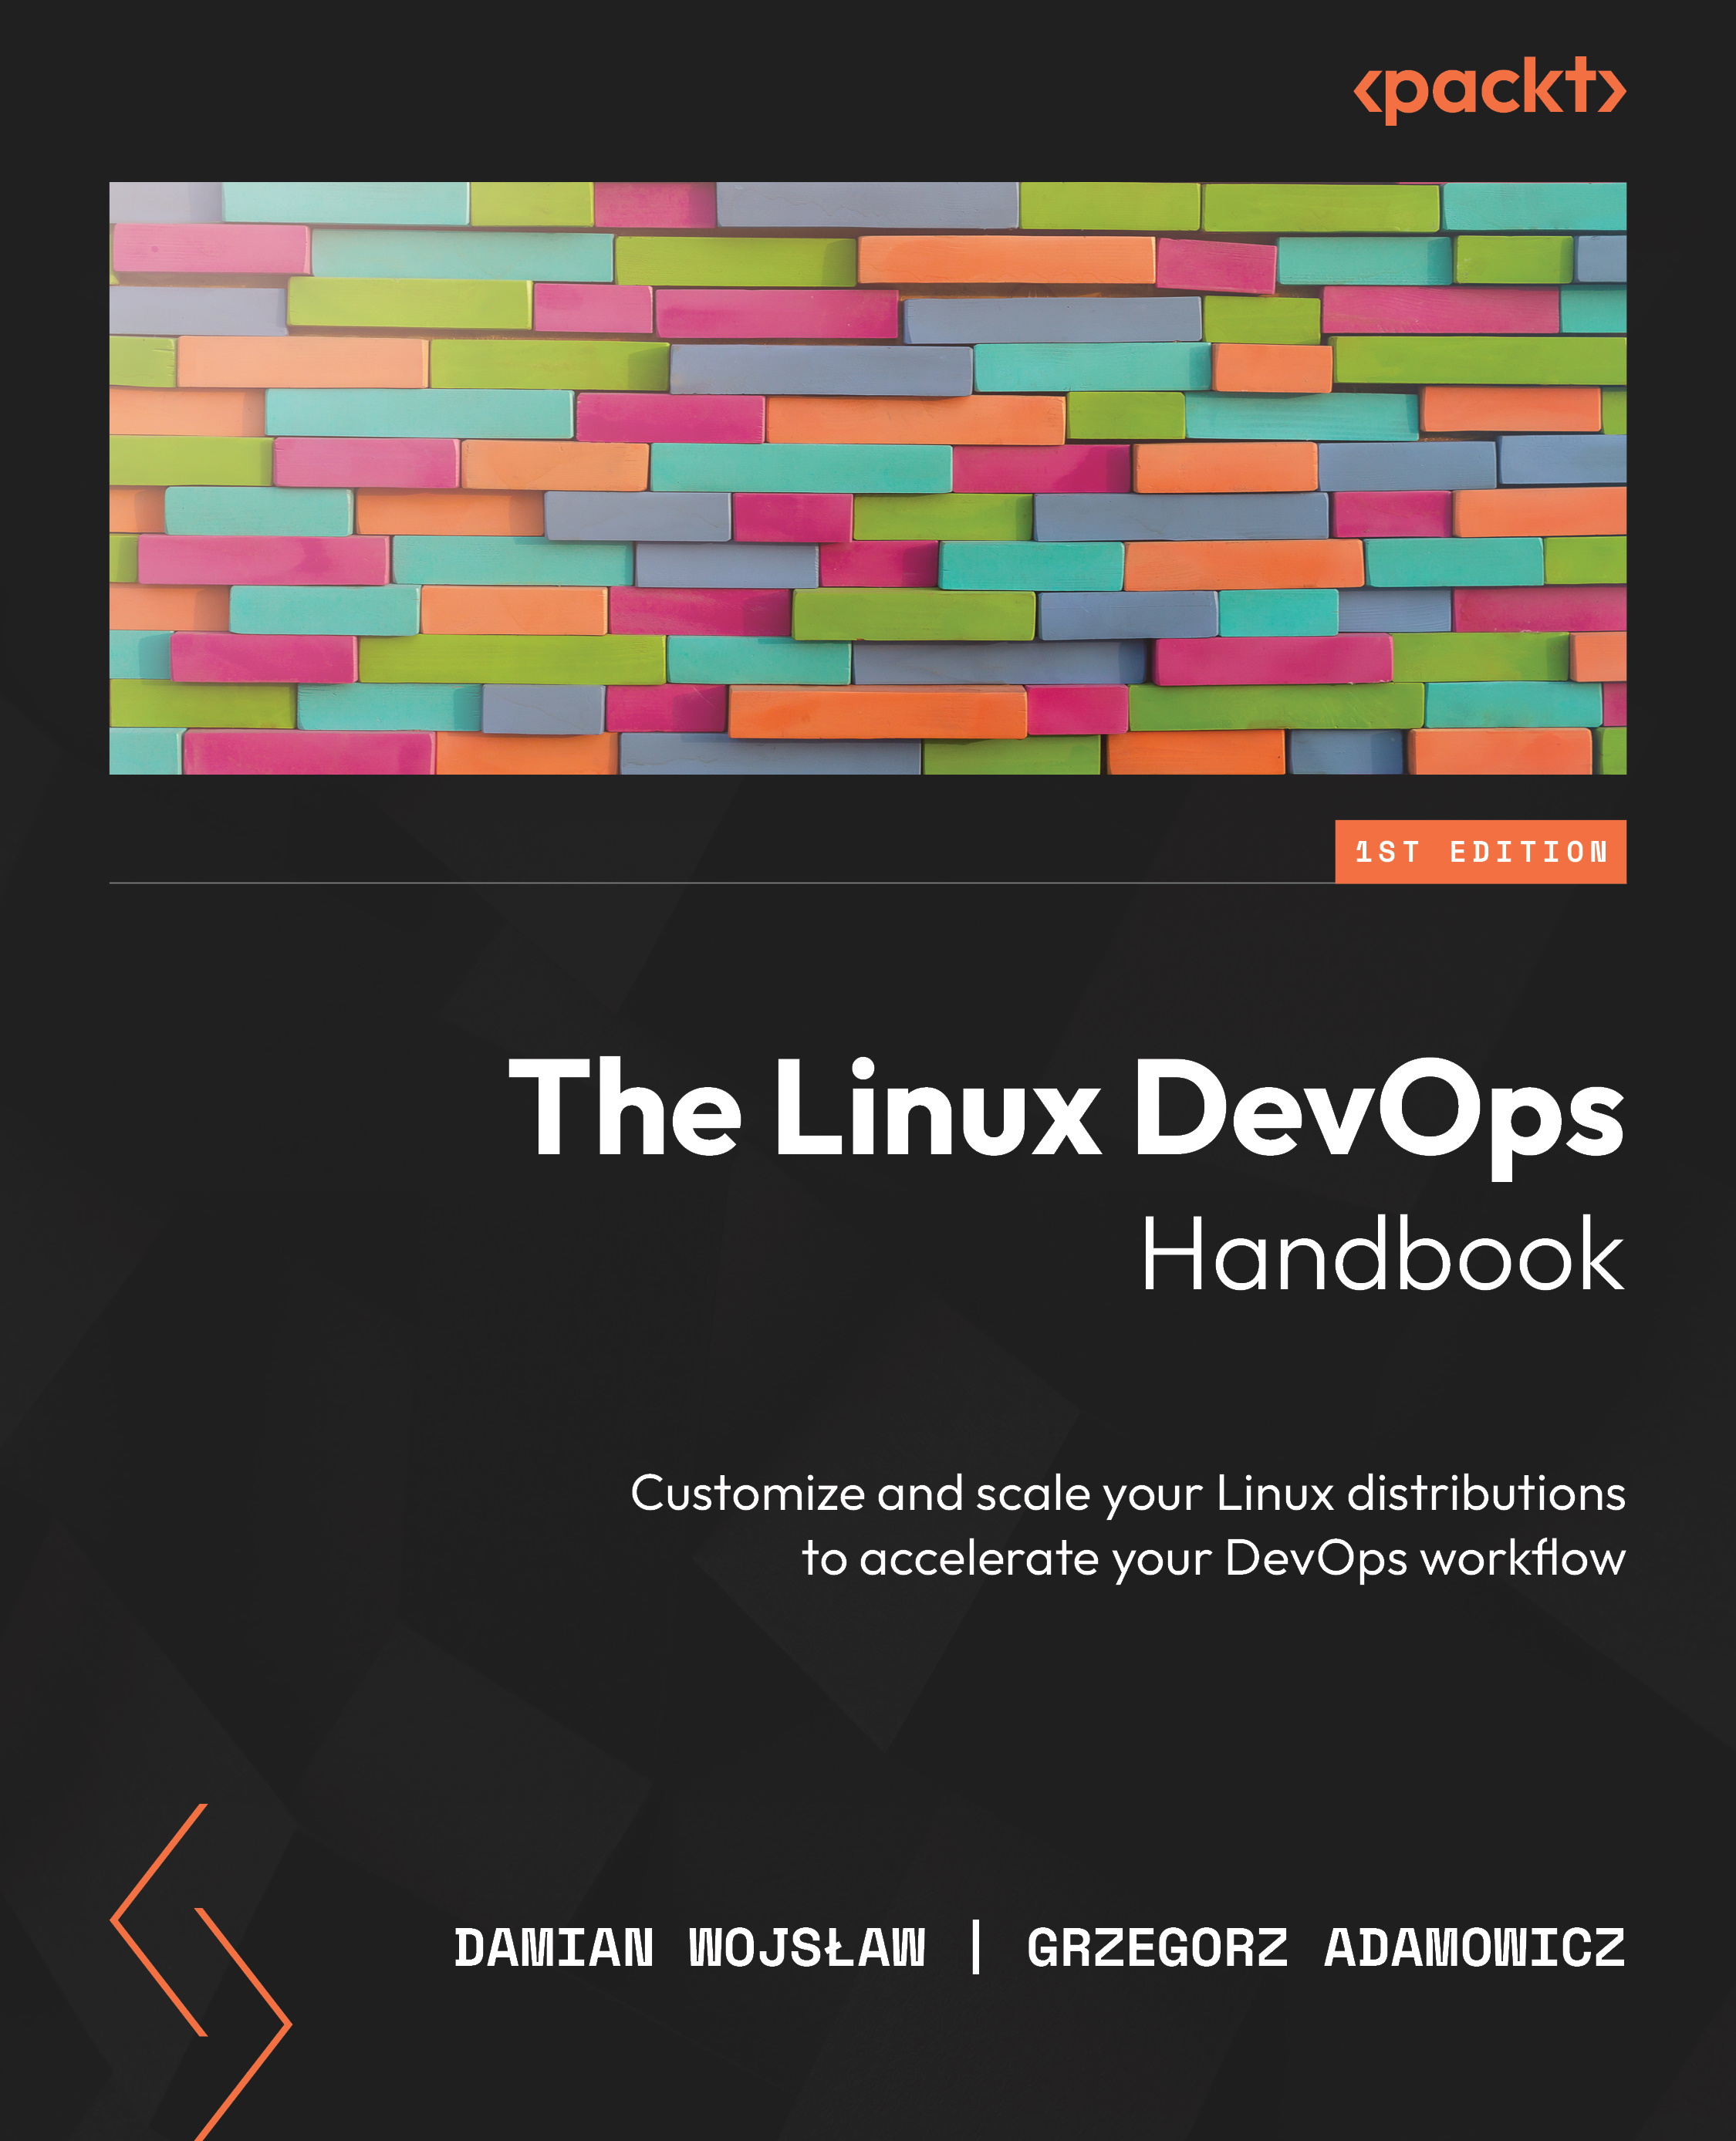 The DevOps Handbook